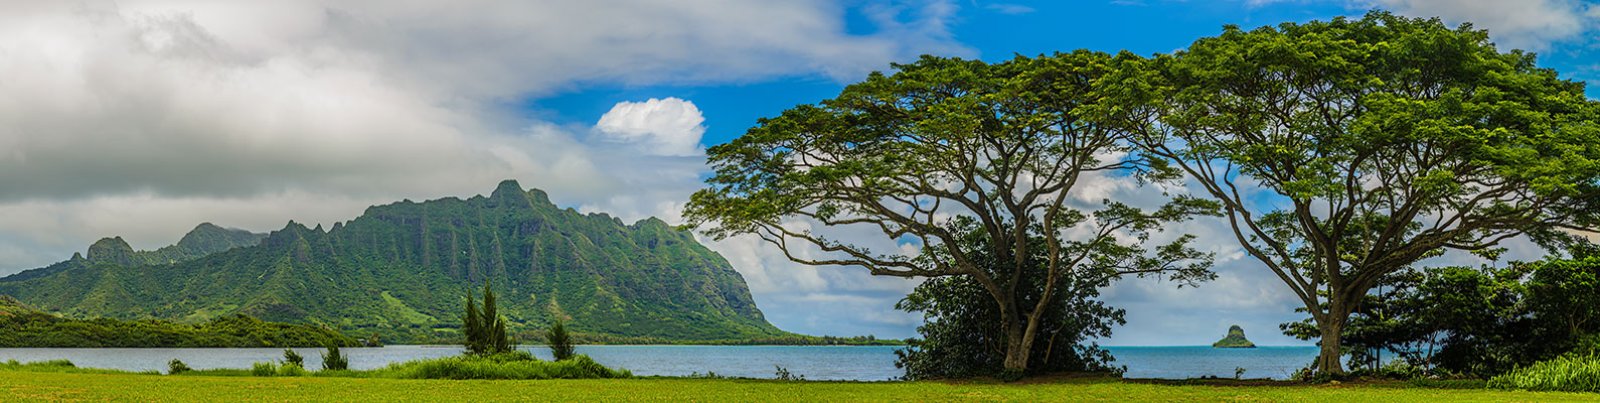 hawaii canada travel advisory